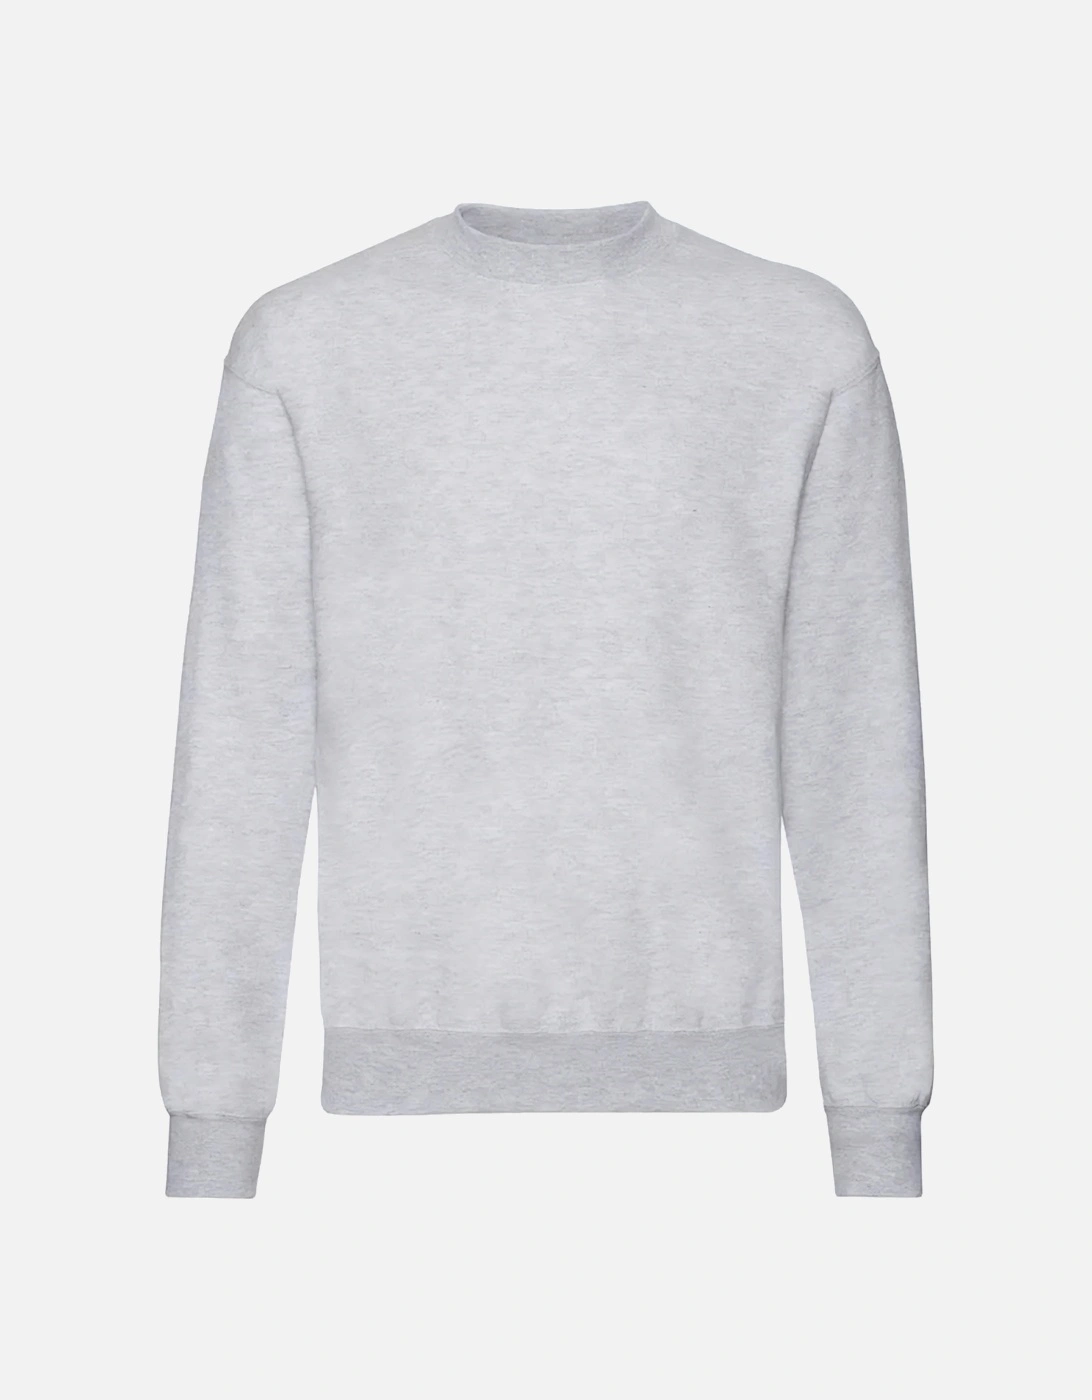 Unisex Adult Classic Drop Shoulder Sweatshirt, 5 of 4